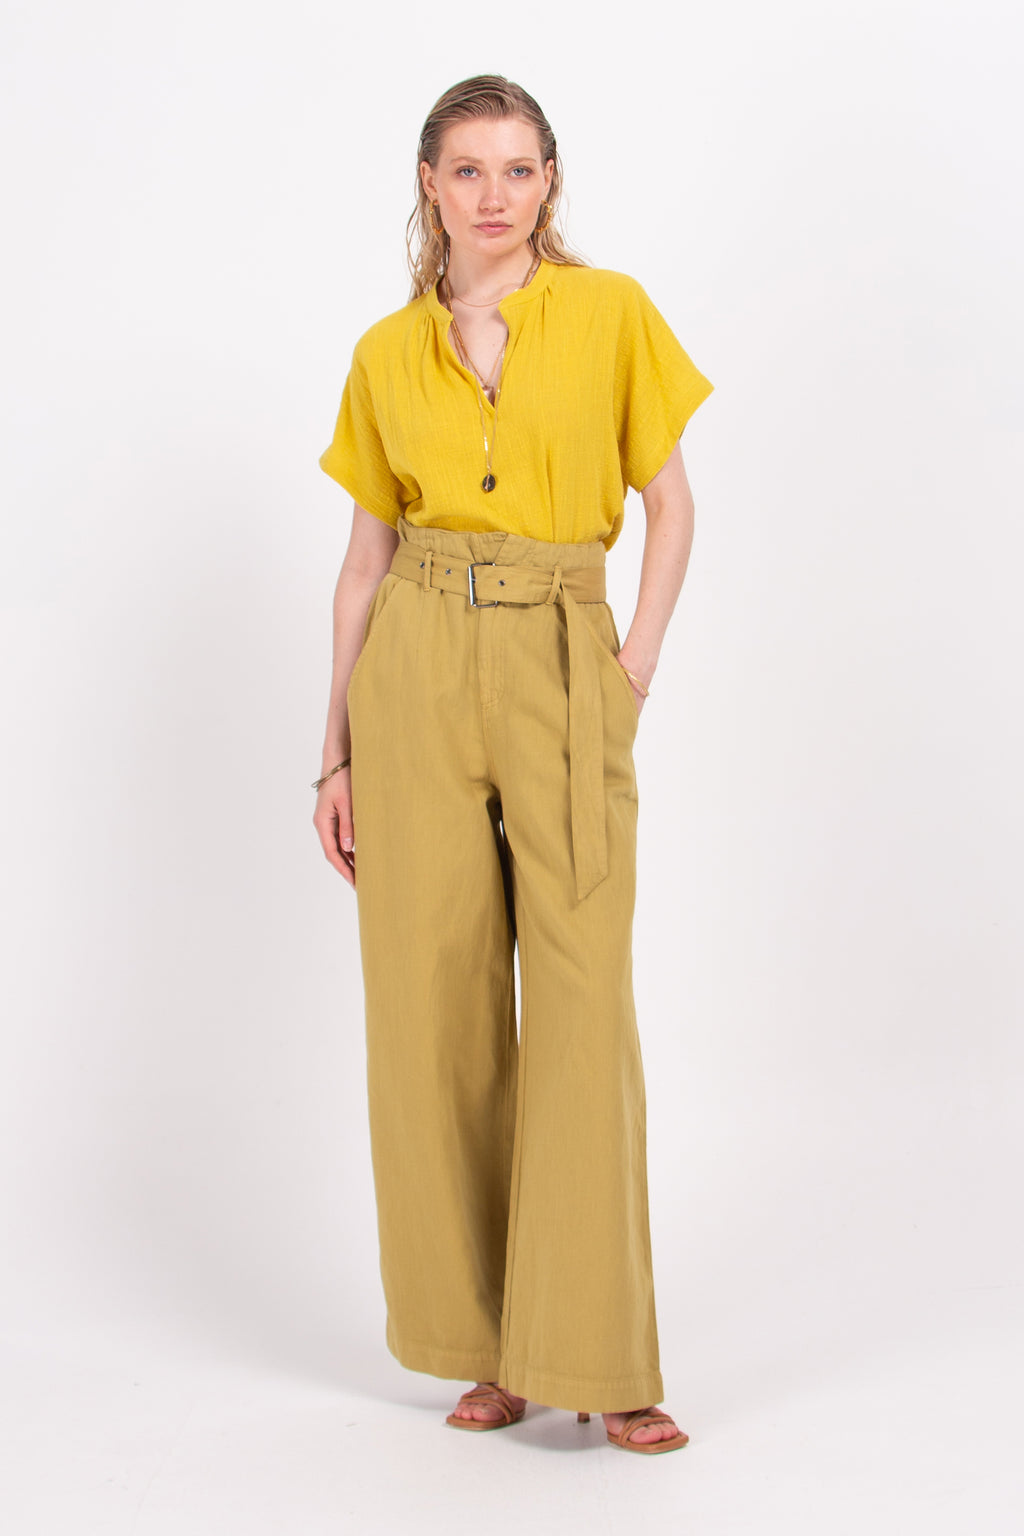 Bamira mustard blouse